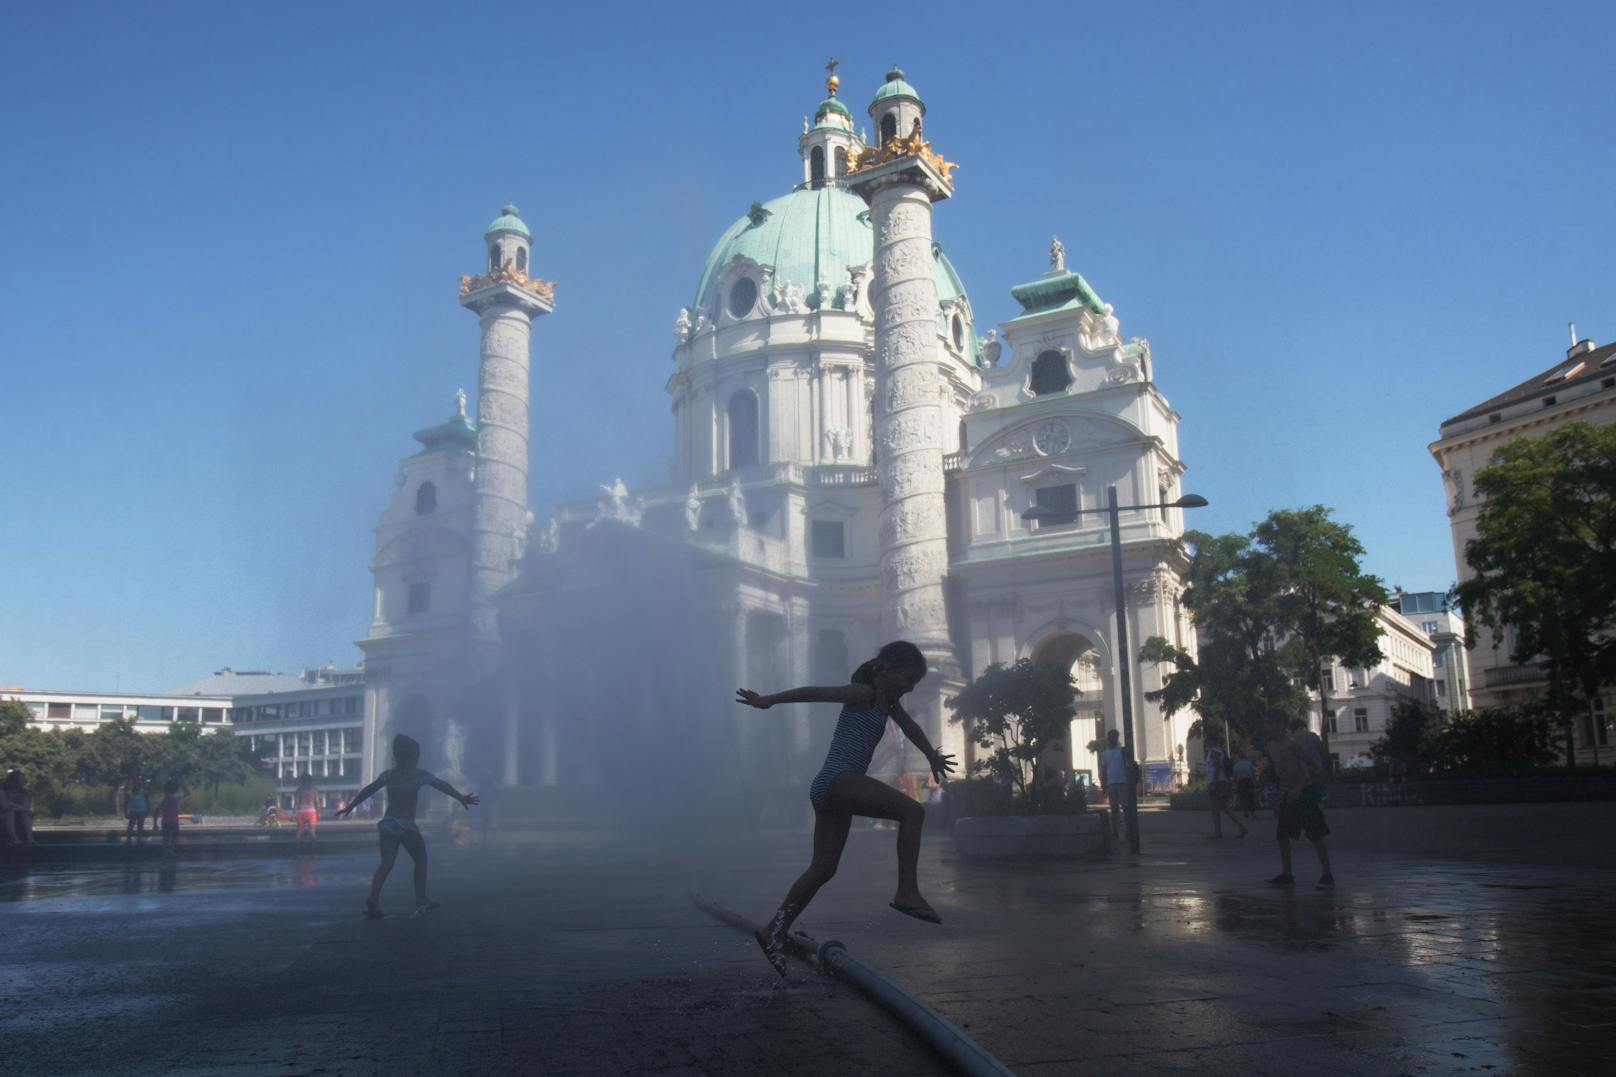 Ein Mädchen springt bei Temperaturen um die 38 Grad Celsius durch eine Wasserfontäne vor der Karlskirche. Archivbild